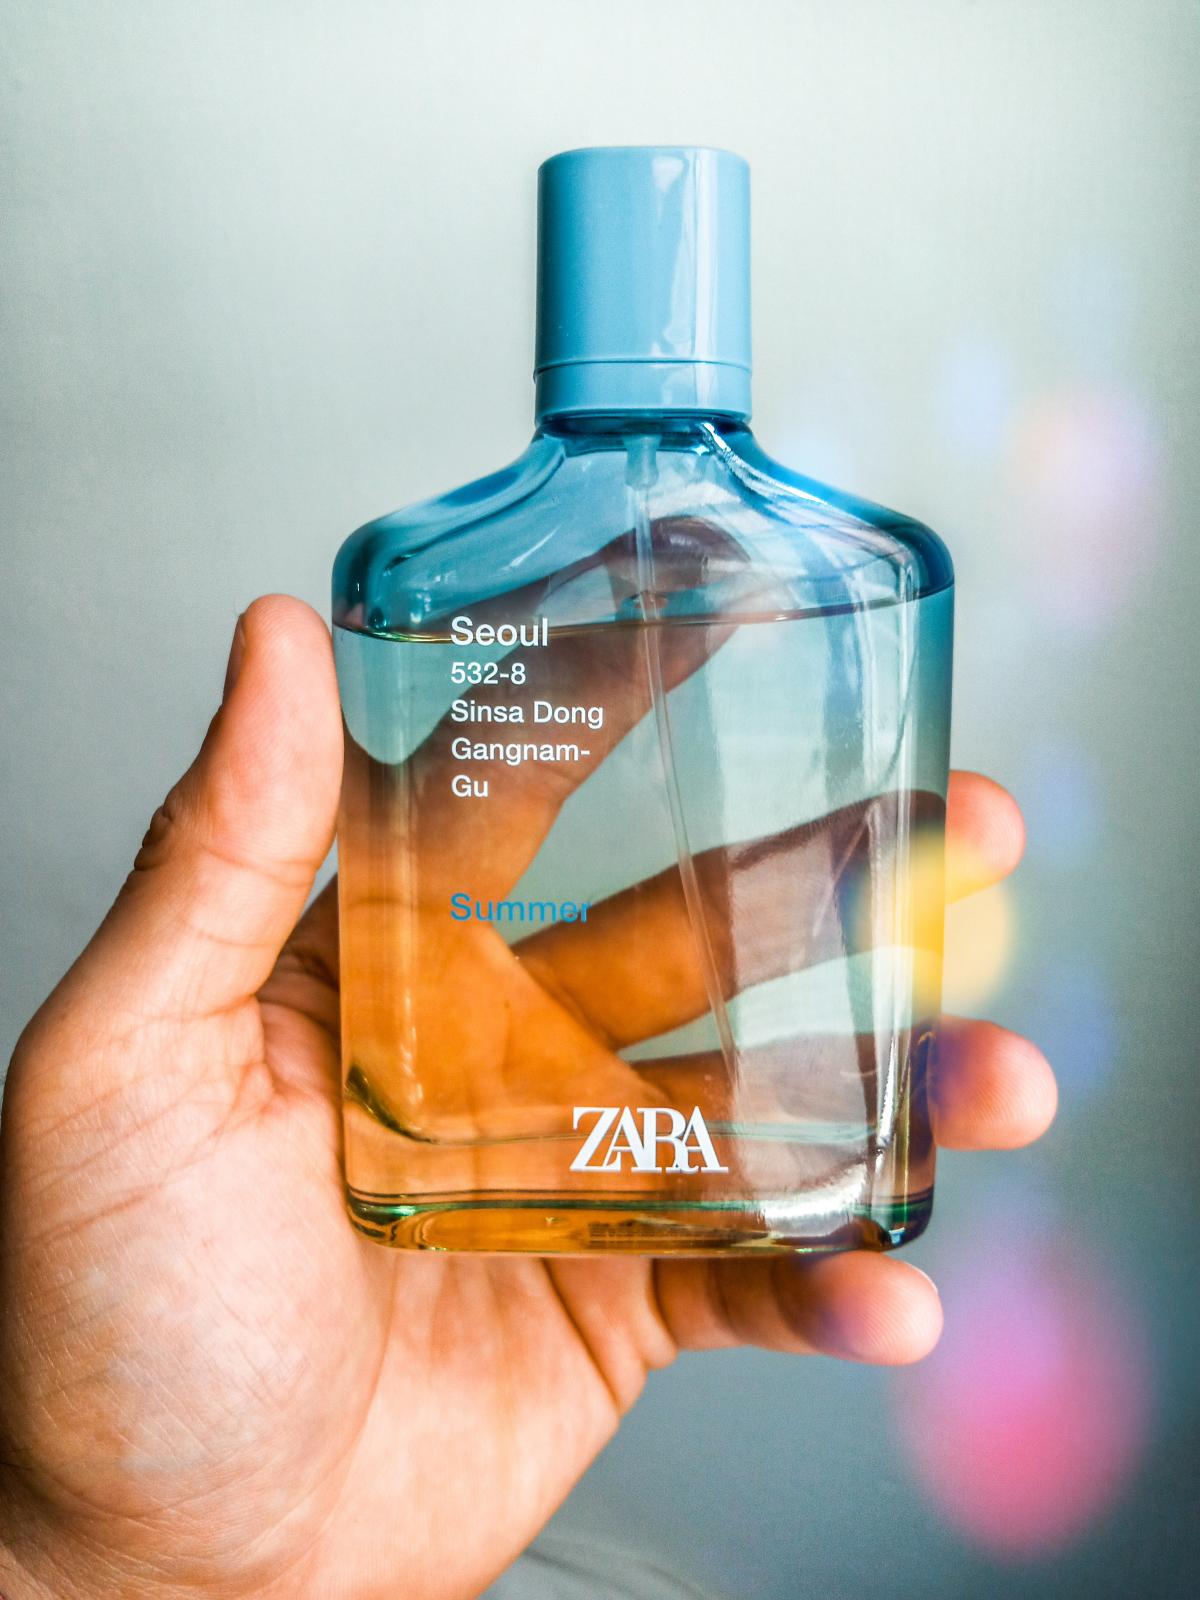 Parfum Zara Seoul